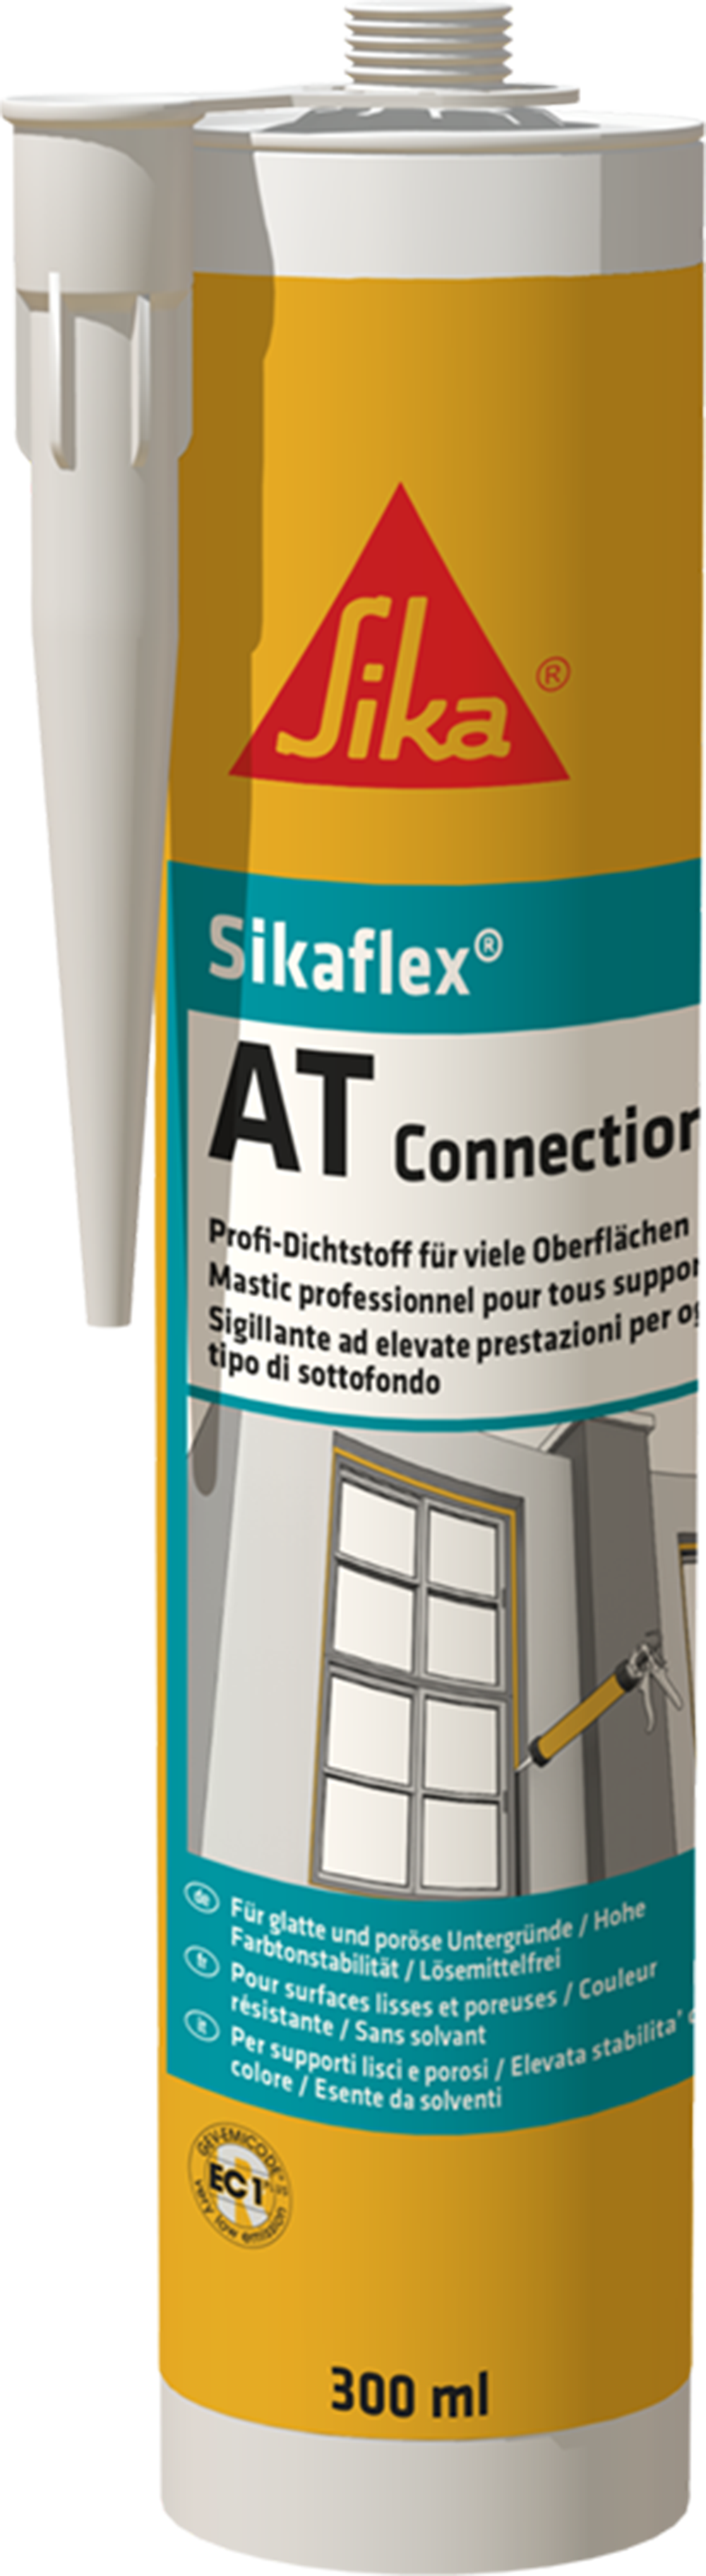 SIKAFLEX® AT CONNECTION - Der Flexible 300 ml